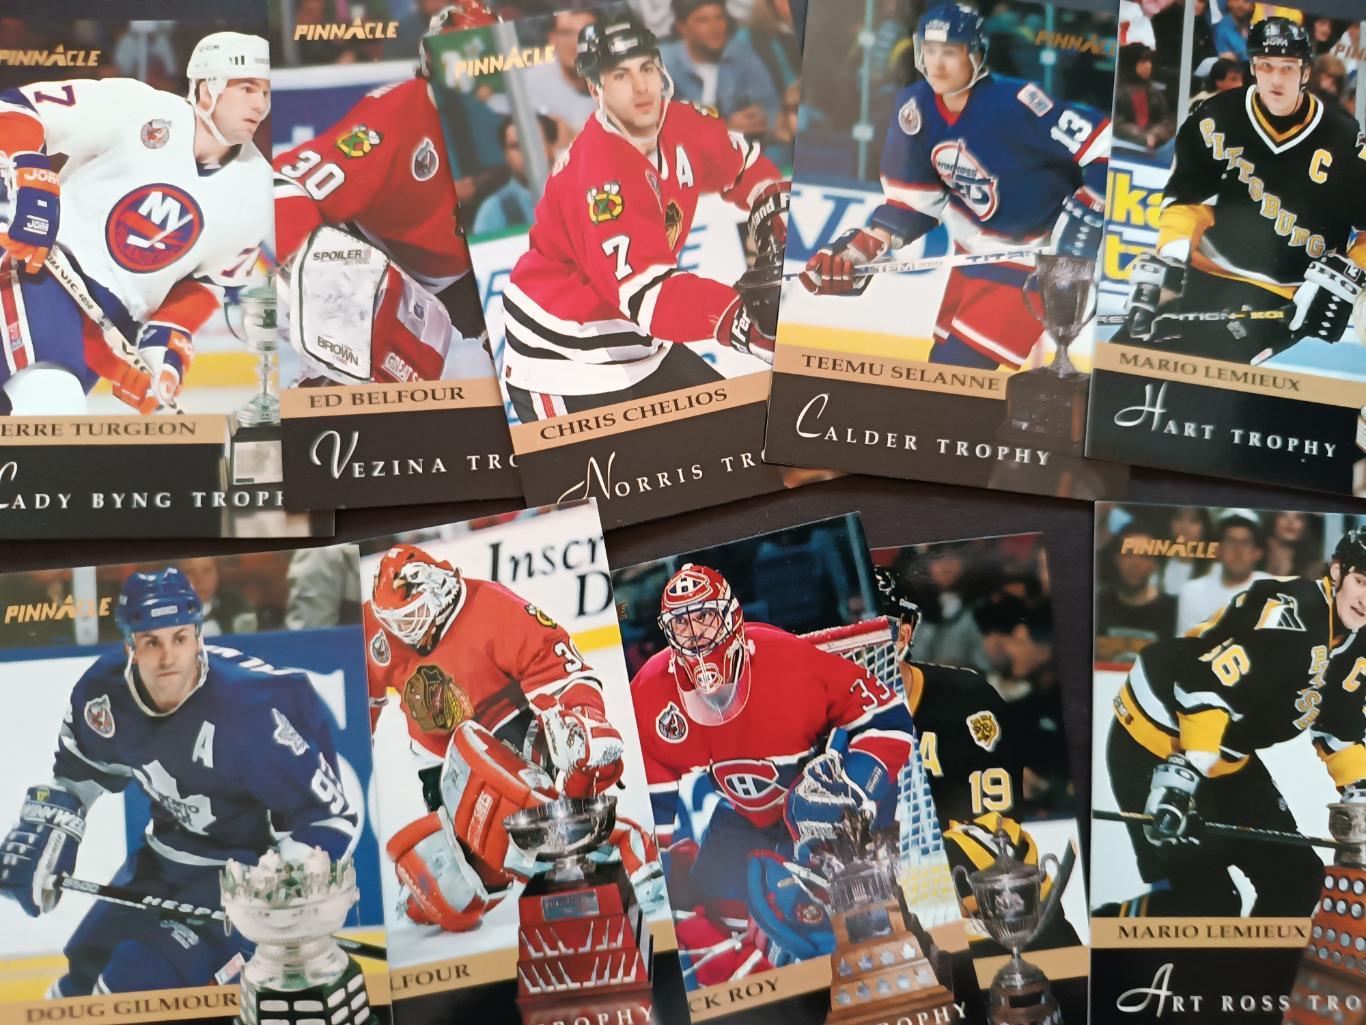 ХОККЕЙ НАБОР КАРТОЧЕК НХЛ ПИННЕКЛ 1993-94 NHL PINNACLE CARD FULL SET #1-400 4